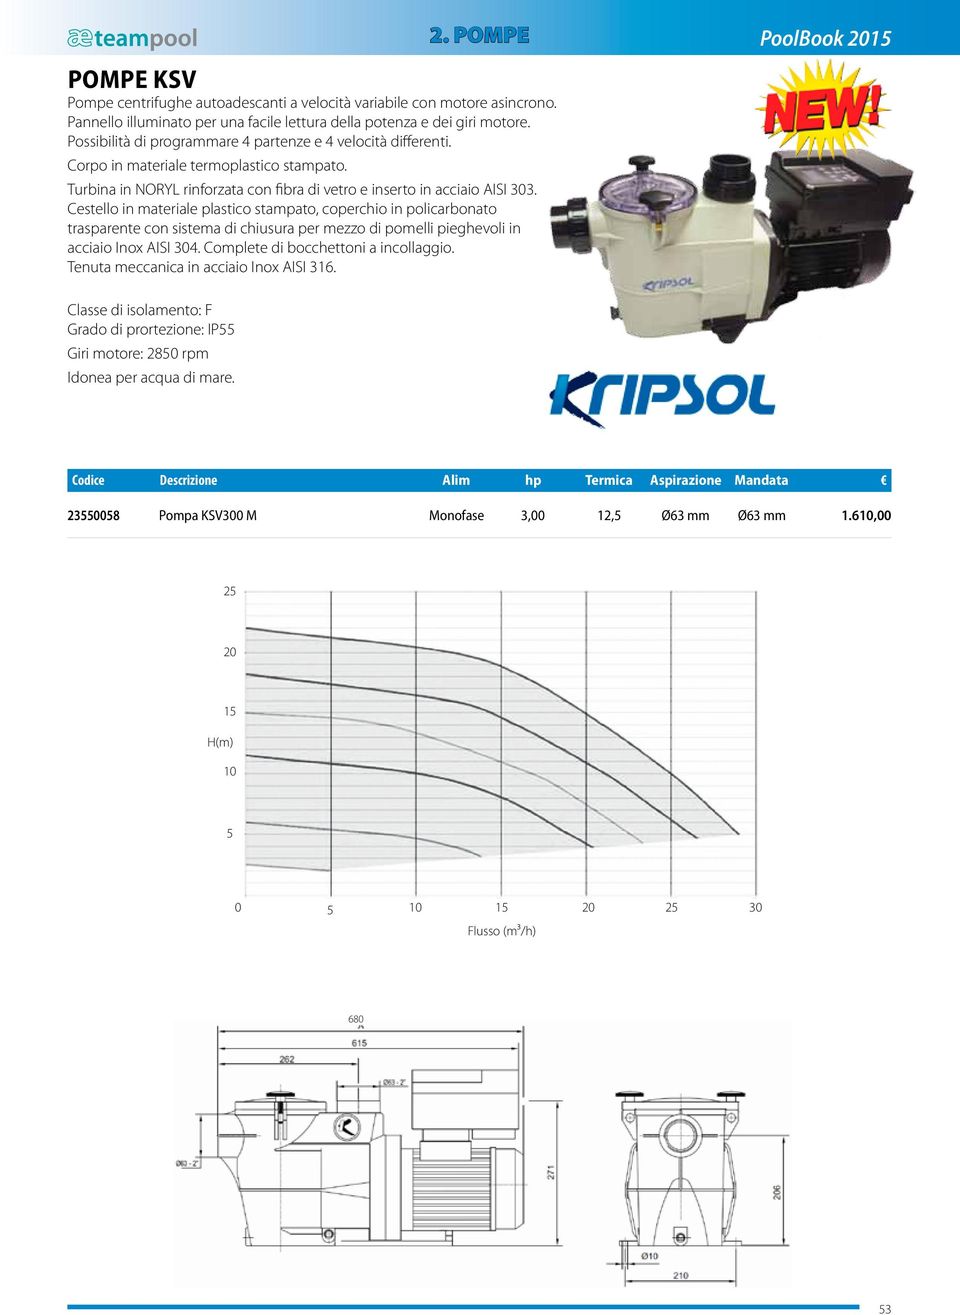 turbina minuto pompe centrifughe ad alta efficienza (IE-2), per 2. POMPE PoolBook 2015 POMPE KSVKRIPSOL Pompe centrifughe autoadescanti a velocità variabile con motore asincrono.